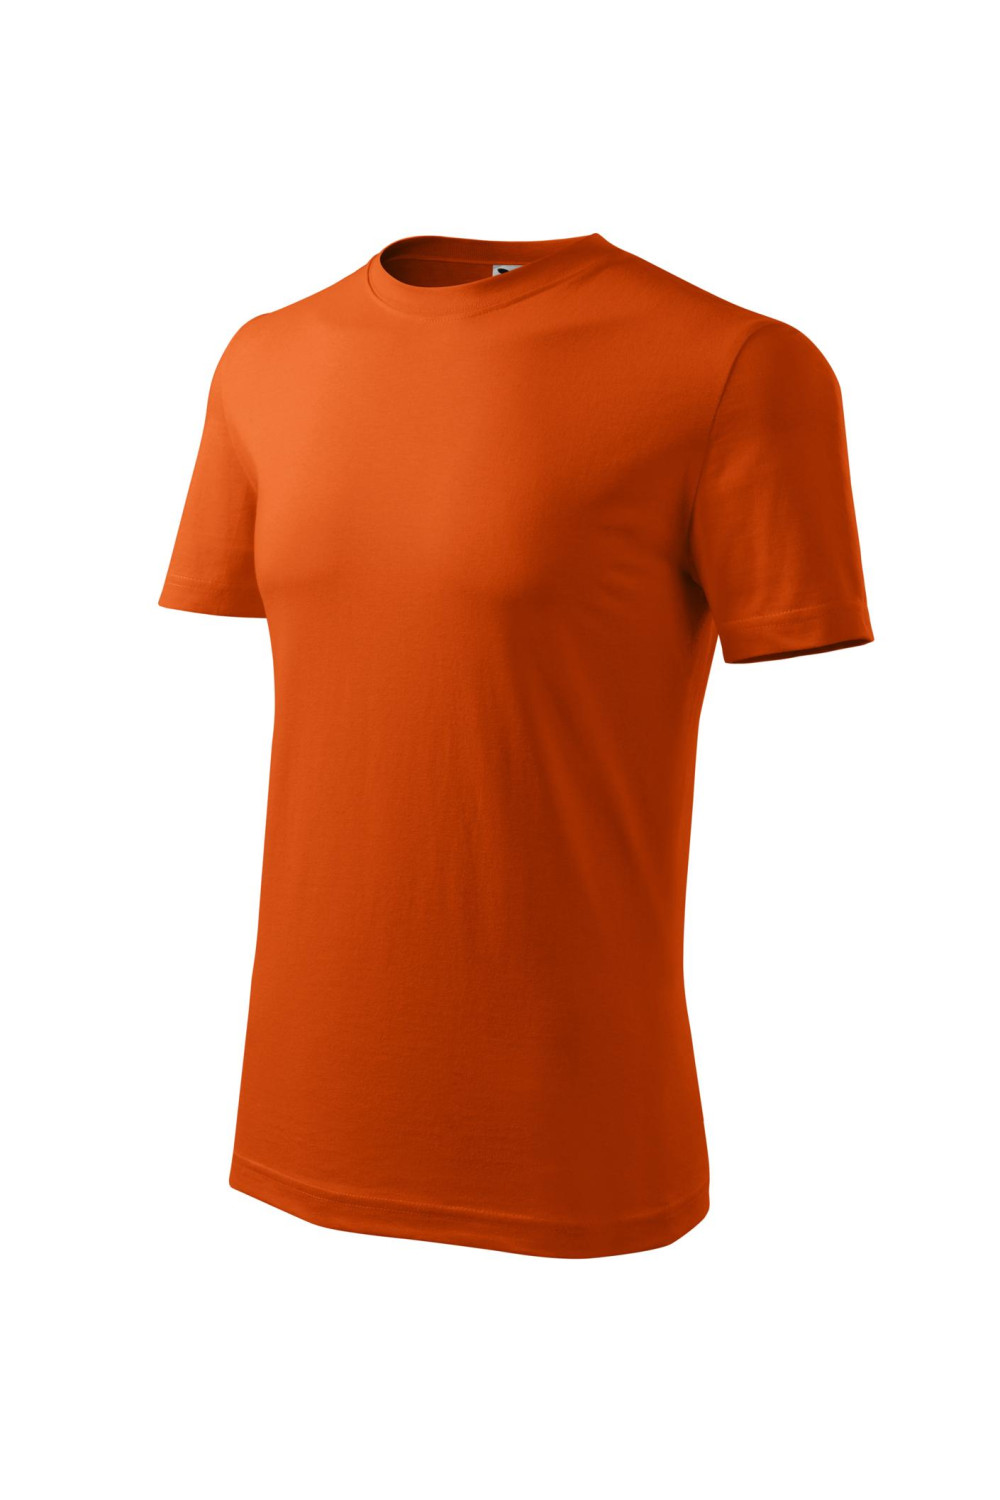 Koszulka męska 100% bawełna CLASSIC 132  pomarańczowy